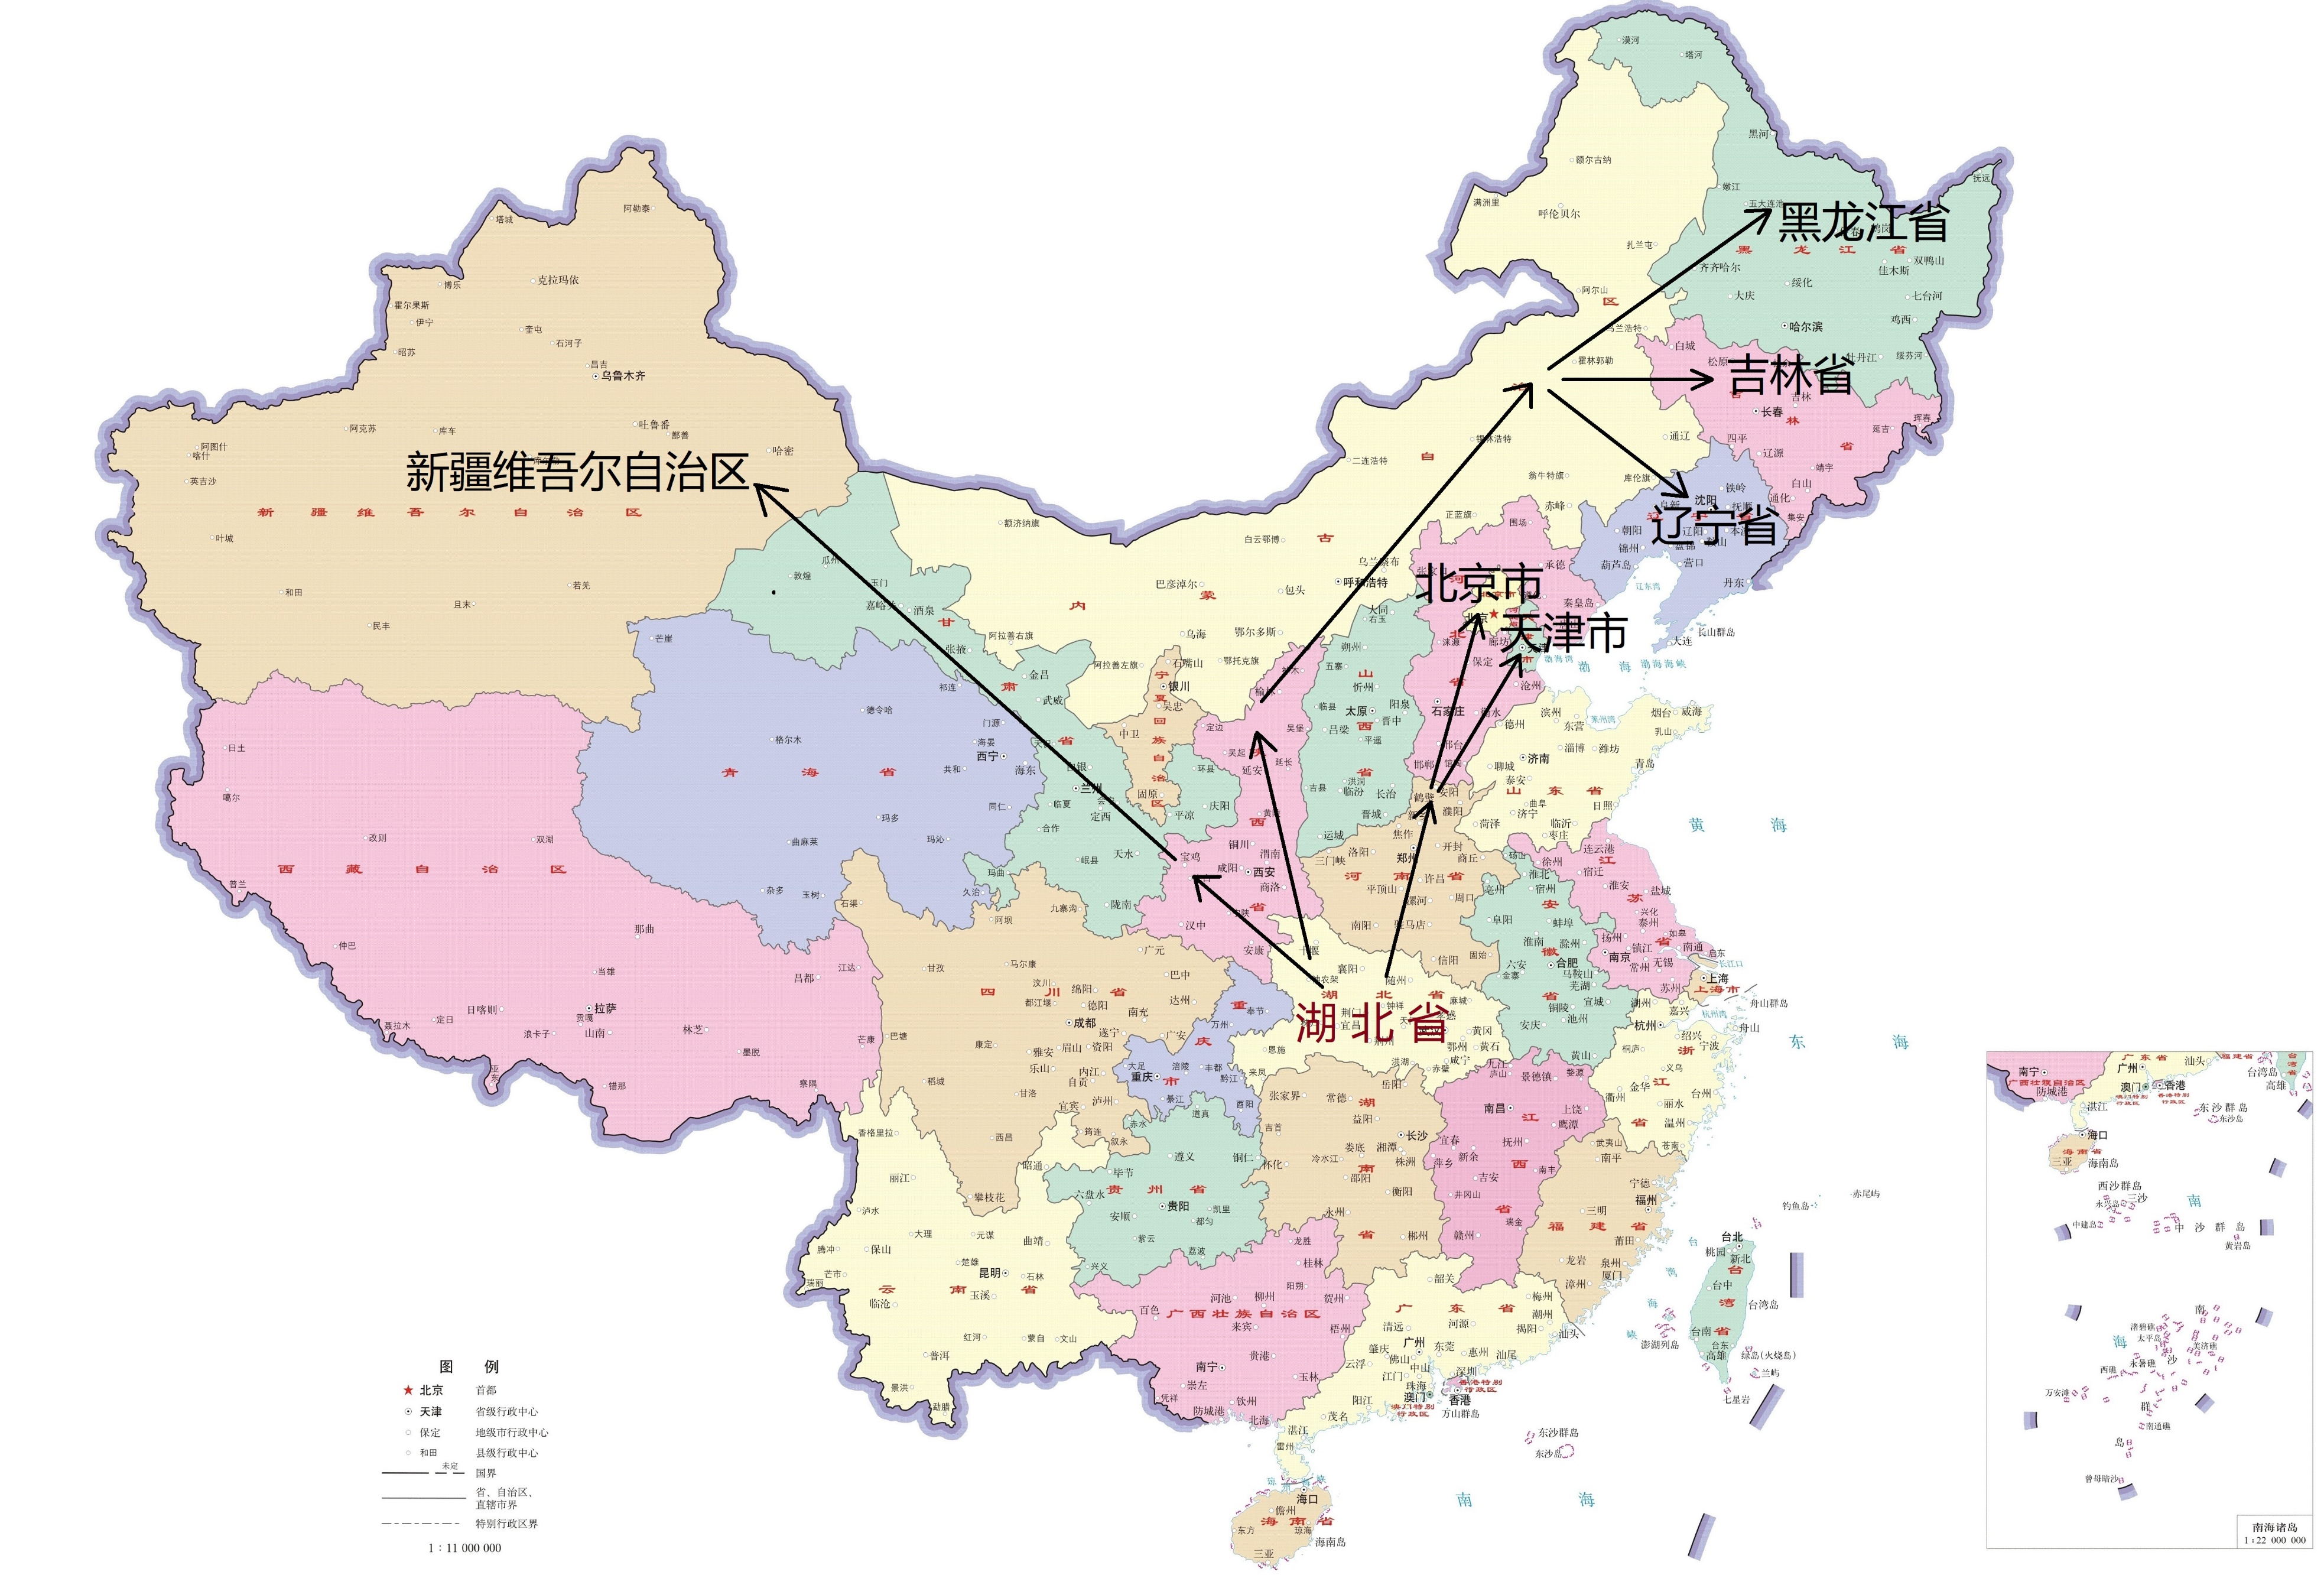 中国面积最大的省份,中国面积最大的省份是哪个